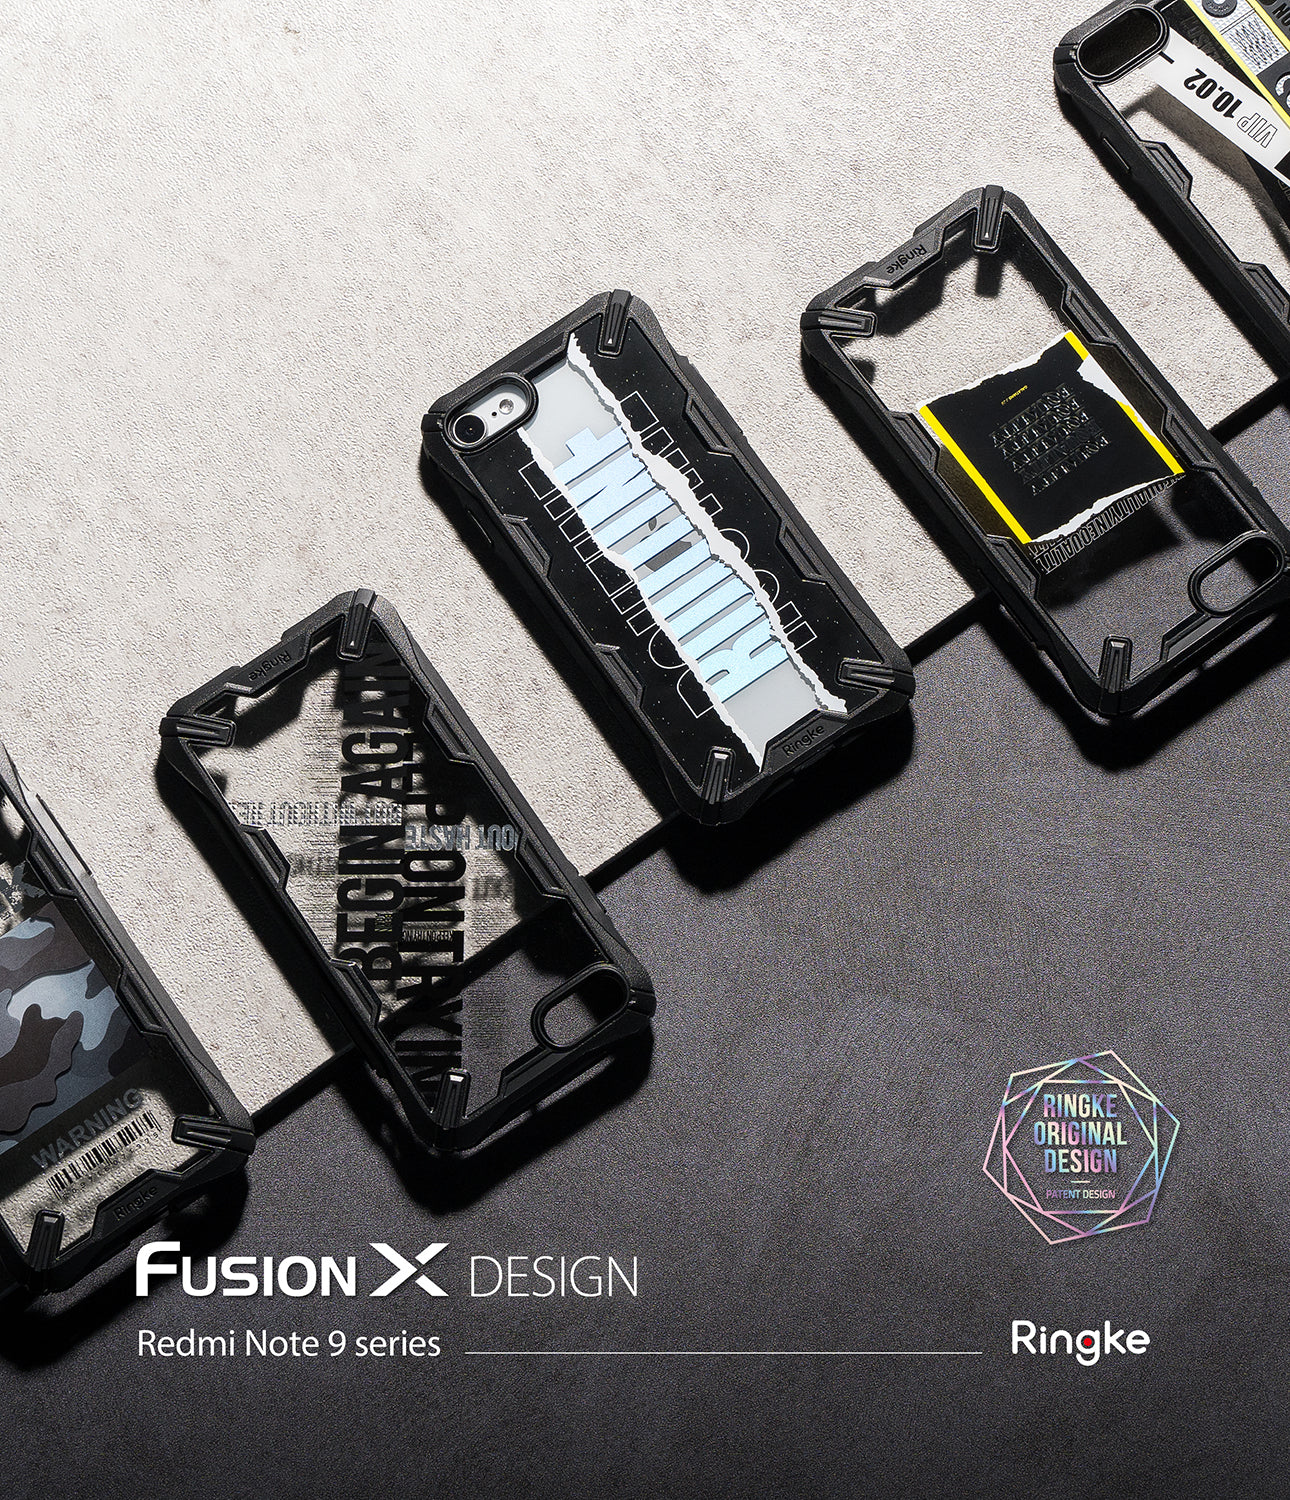 xiaomi redmi note 9s / 9 pro / 9 pro max case - ringke fusion-x design 02. cross